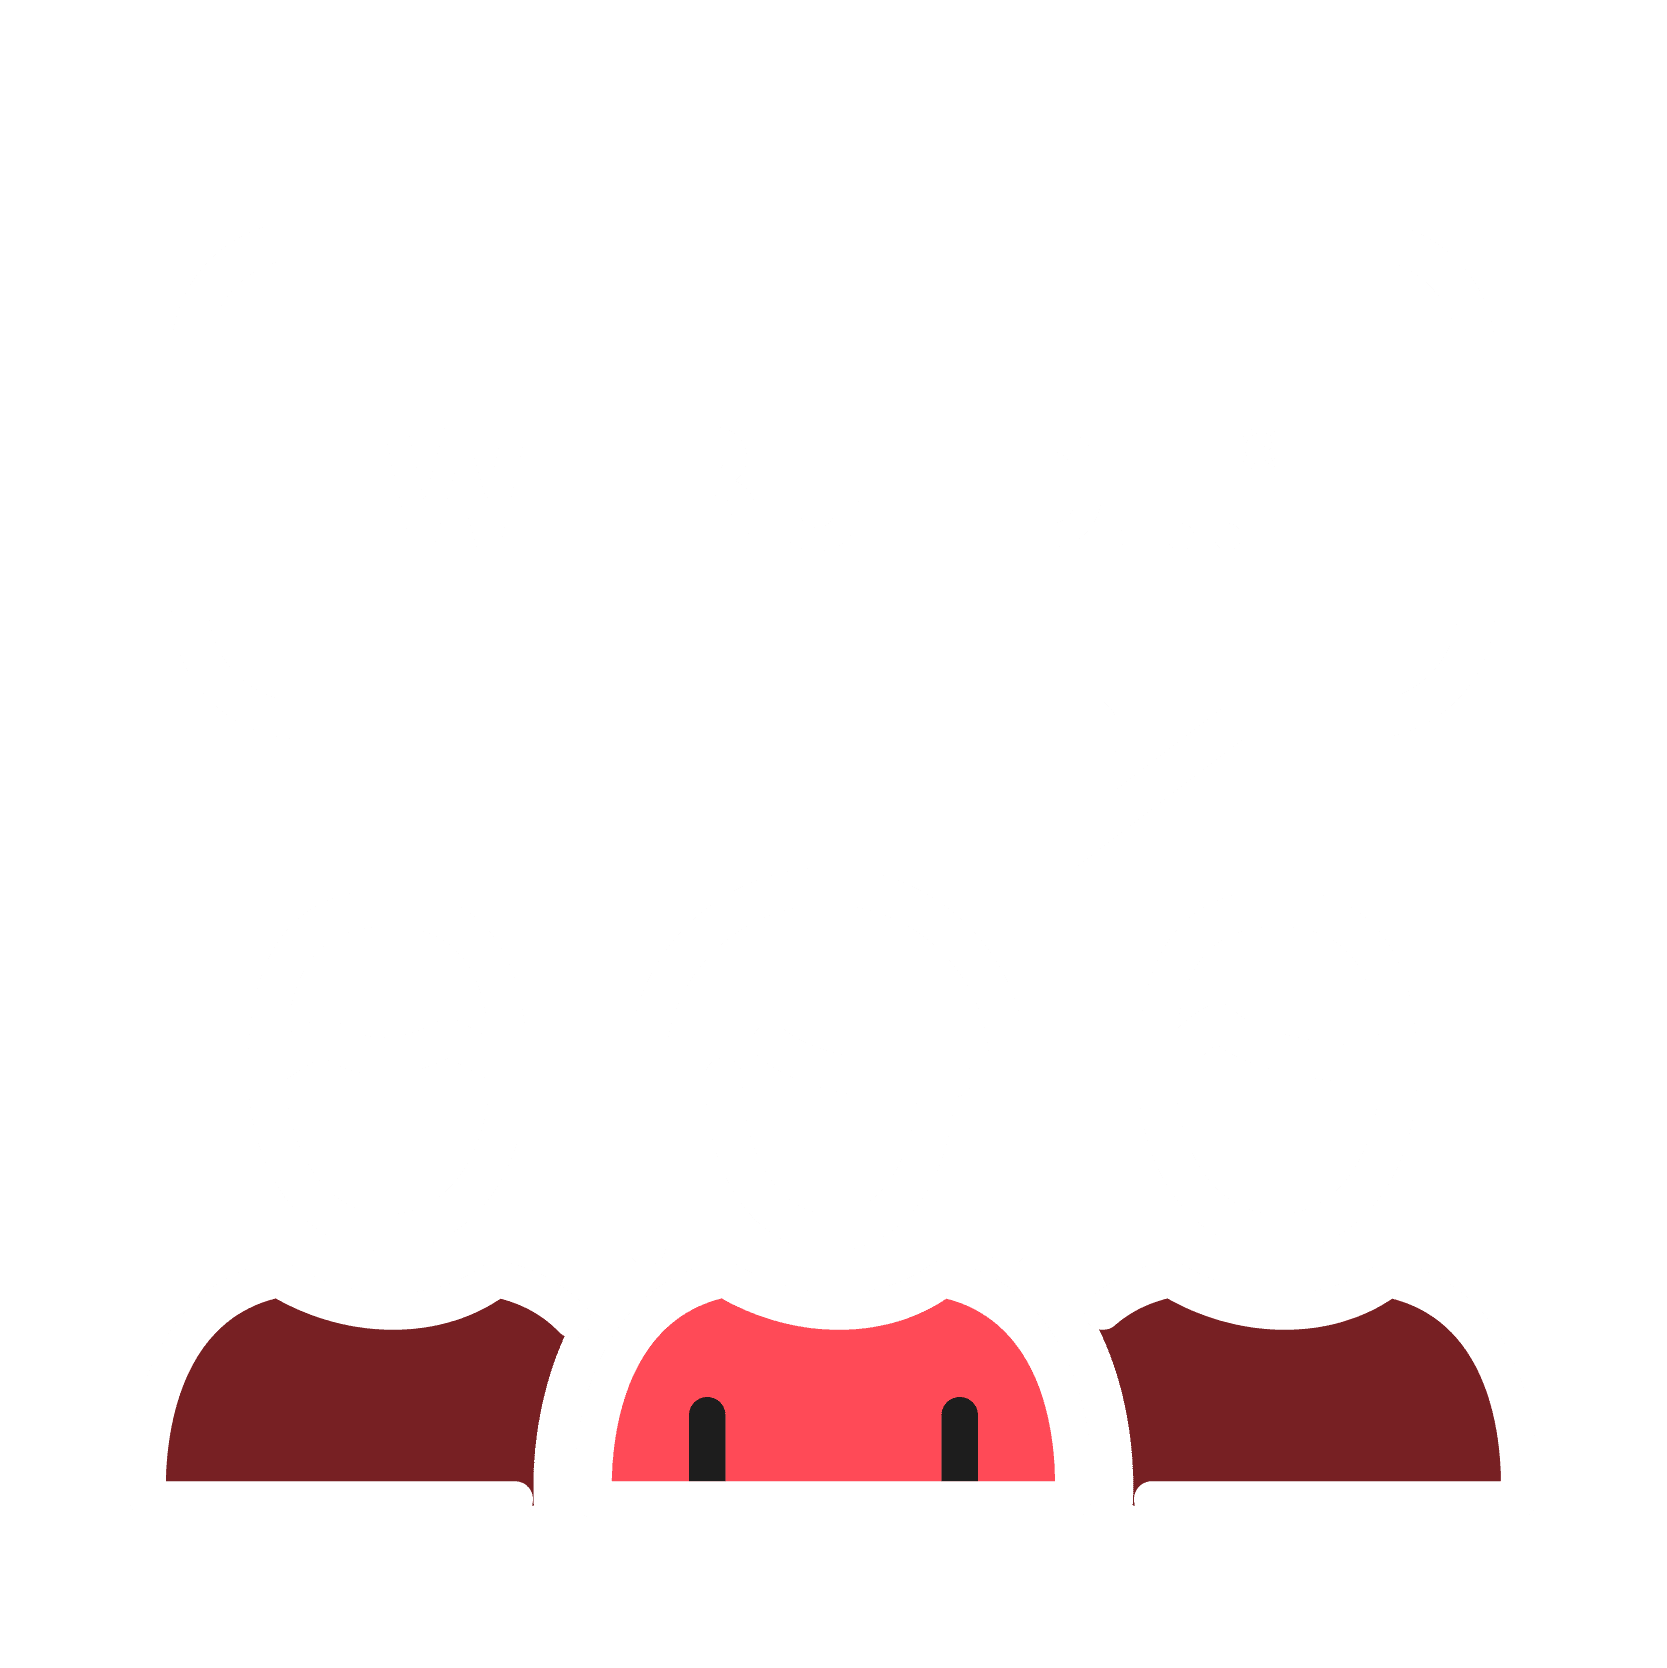 We Build